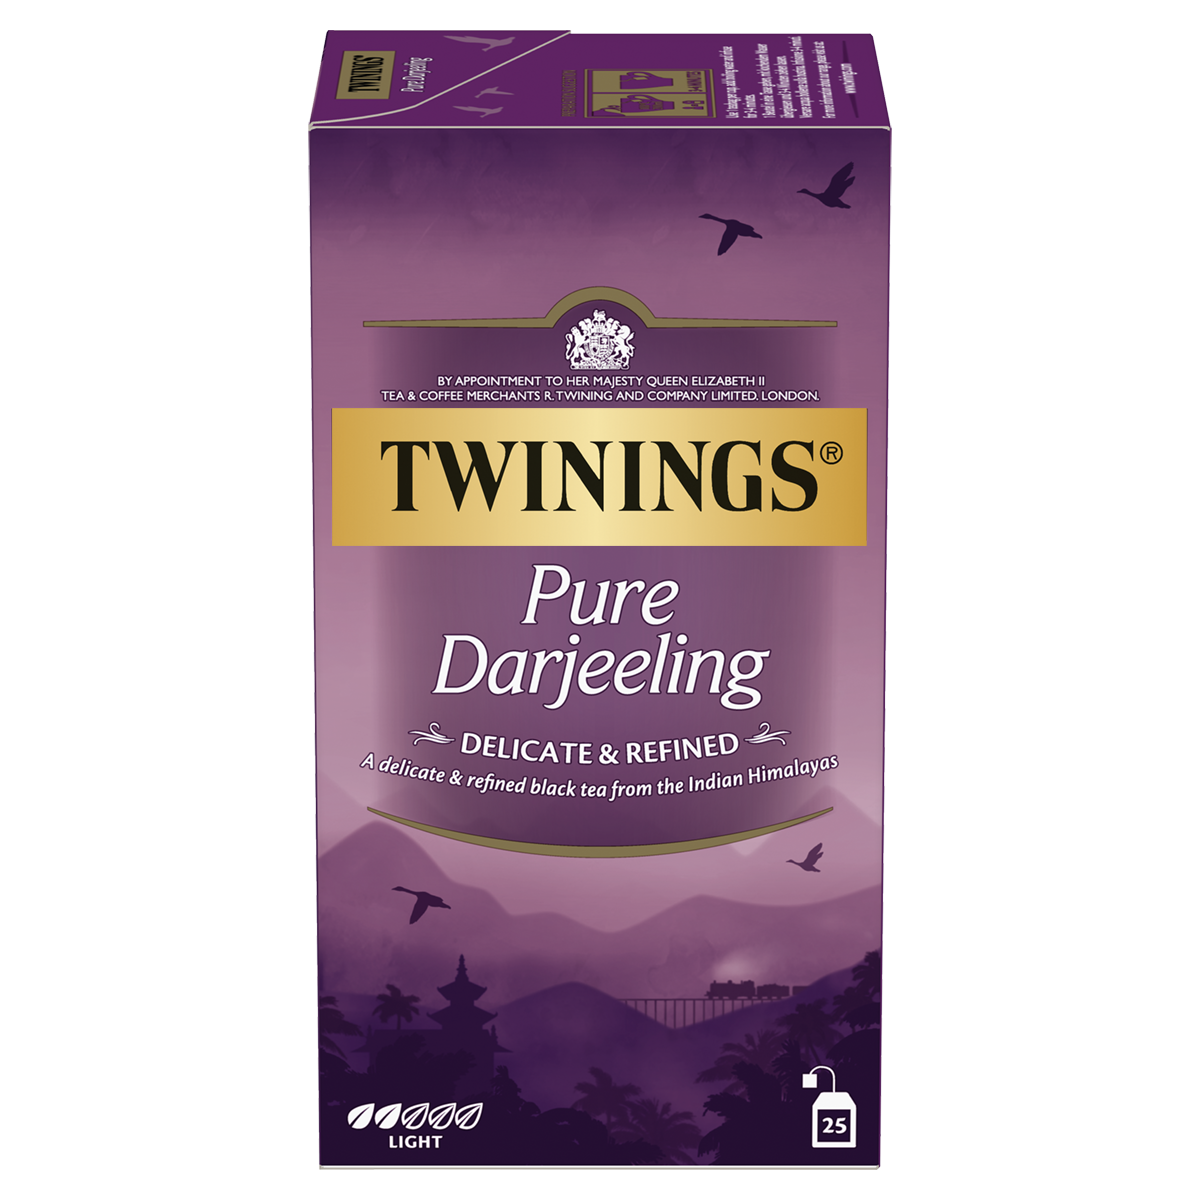  Pure Darjeeling: le thé noir délicat